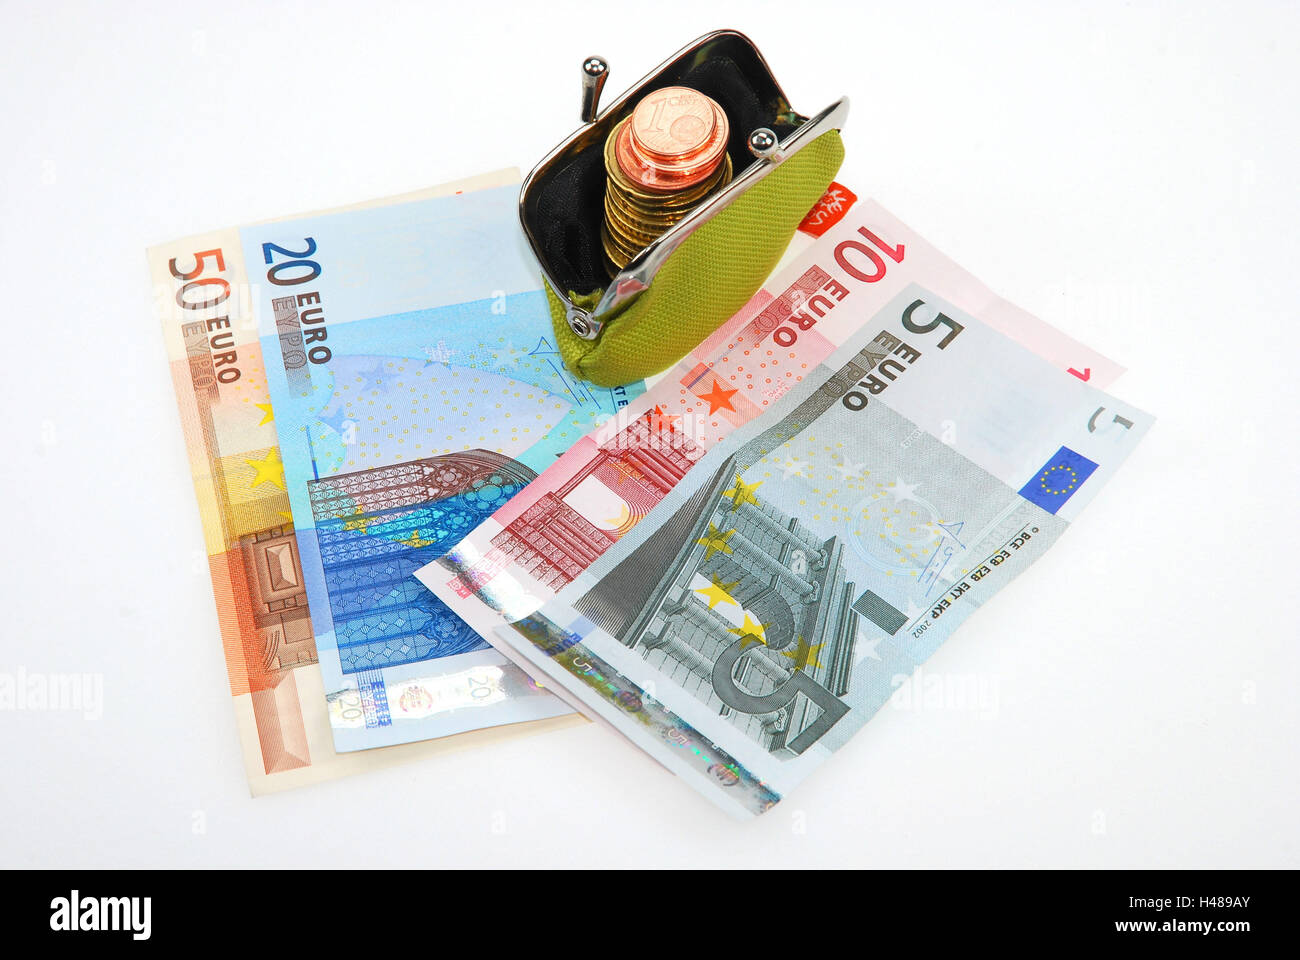 Monedero con monedas y billetes de banco, Foto de stock